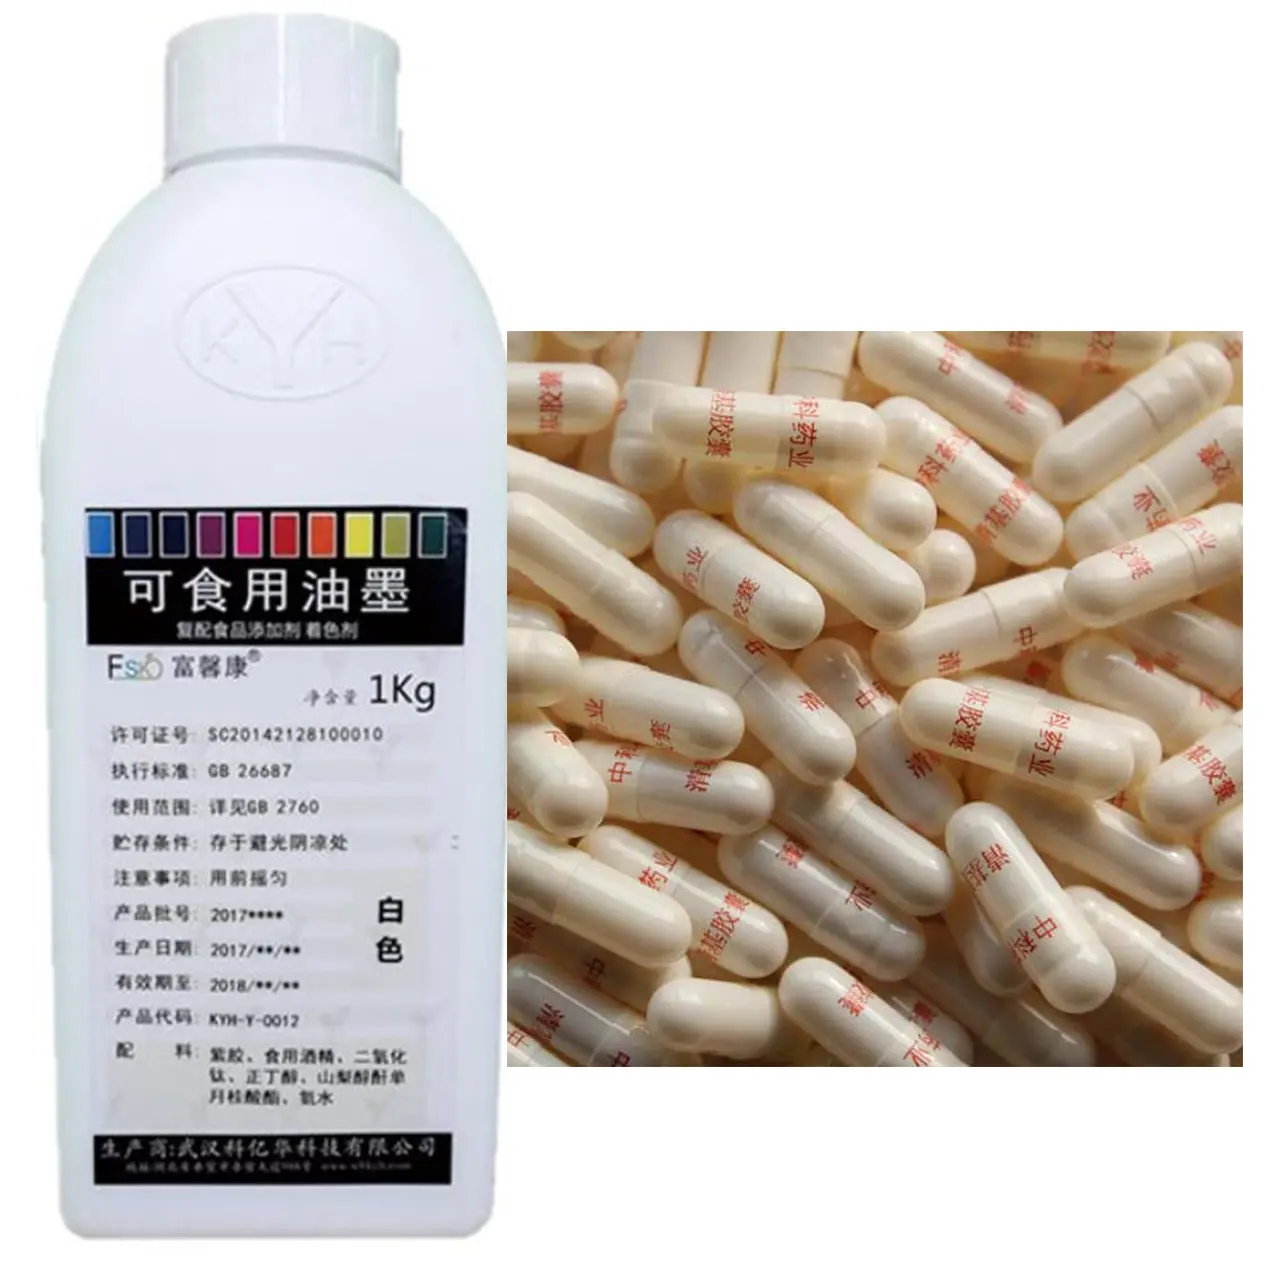 KYH-0012 टाइटेनियम डाइऑक्साइड सफेद कैप्सूल प्रिंटिंग स्याही के लिए बिक्री